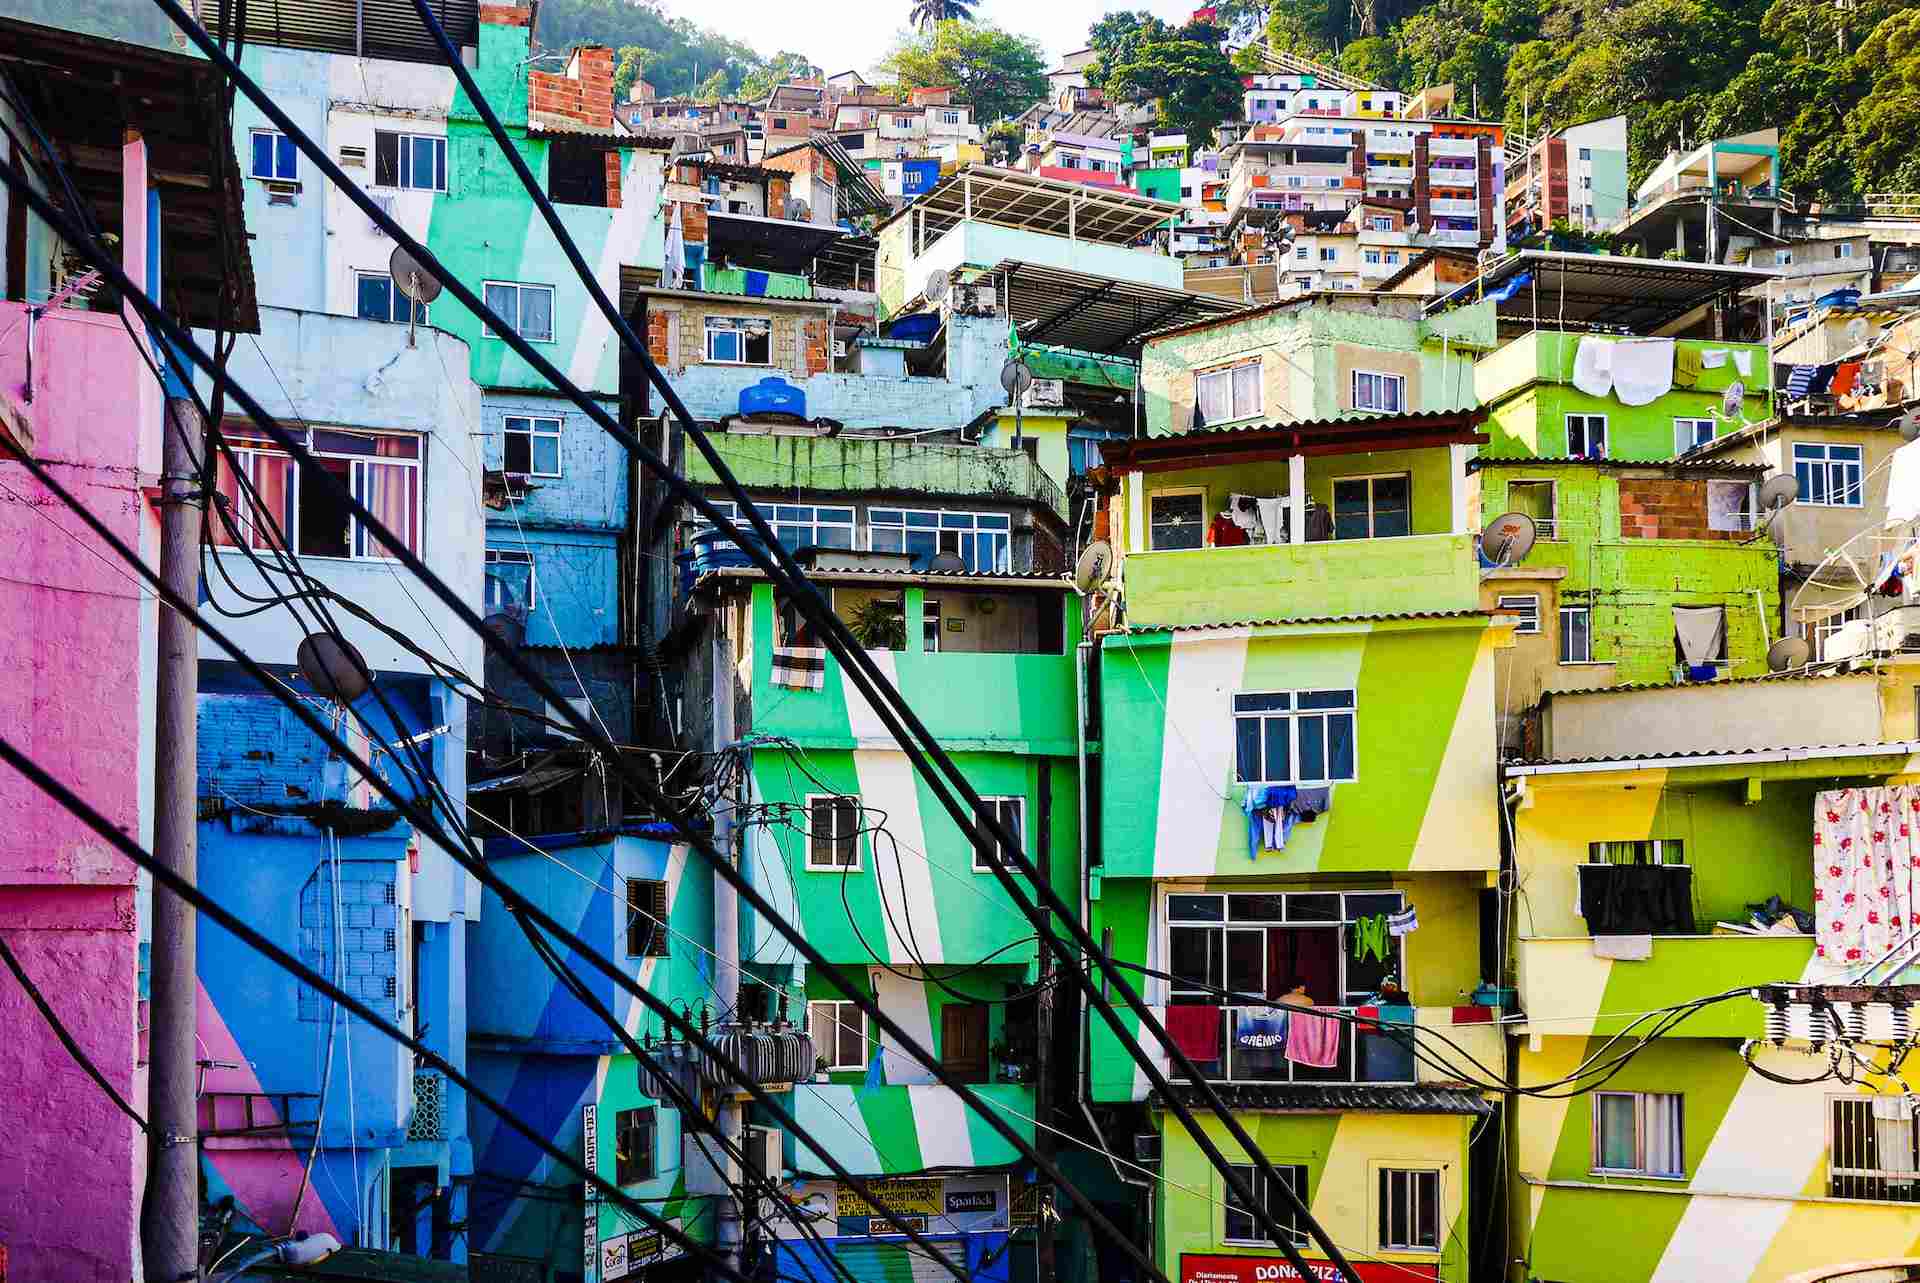 Casas coloridas em comunidade no Rio de Janeiro